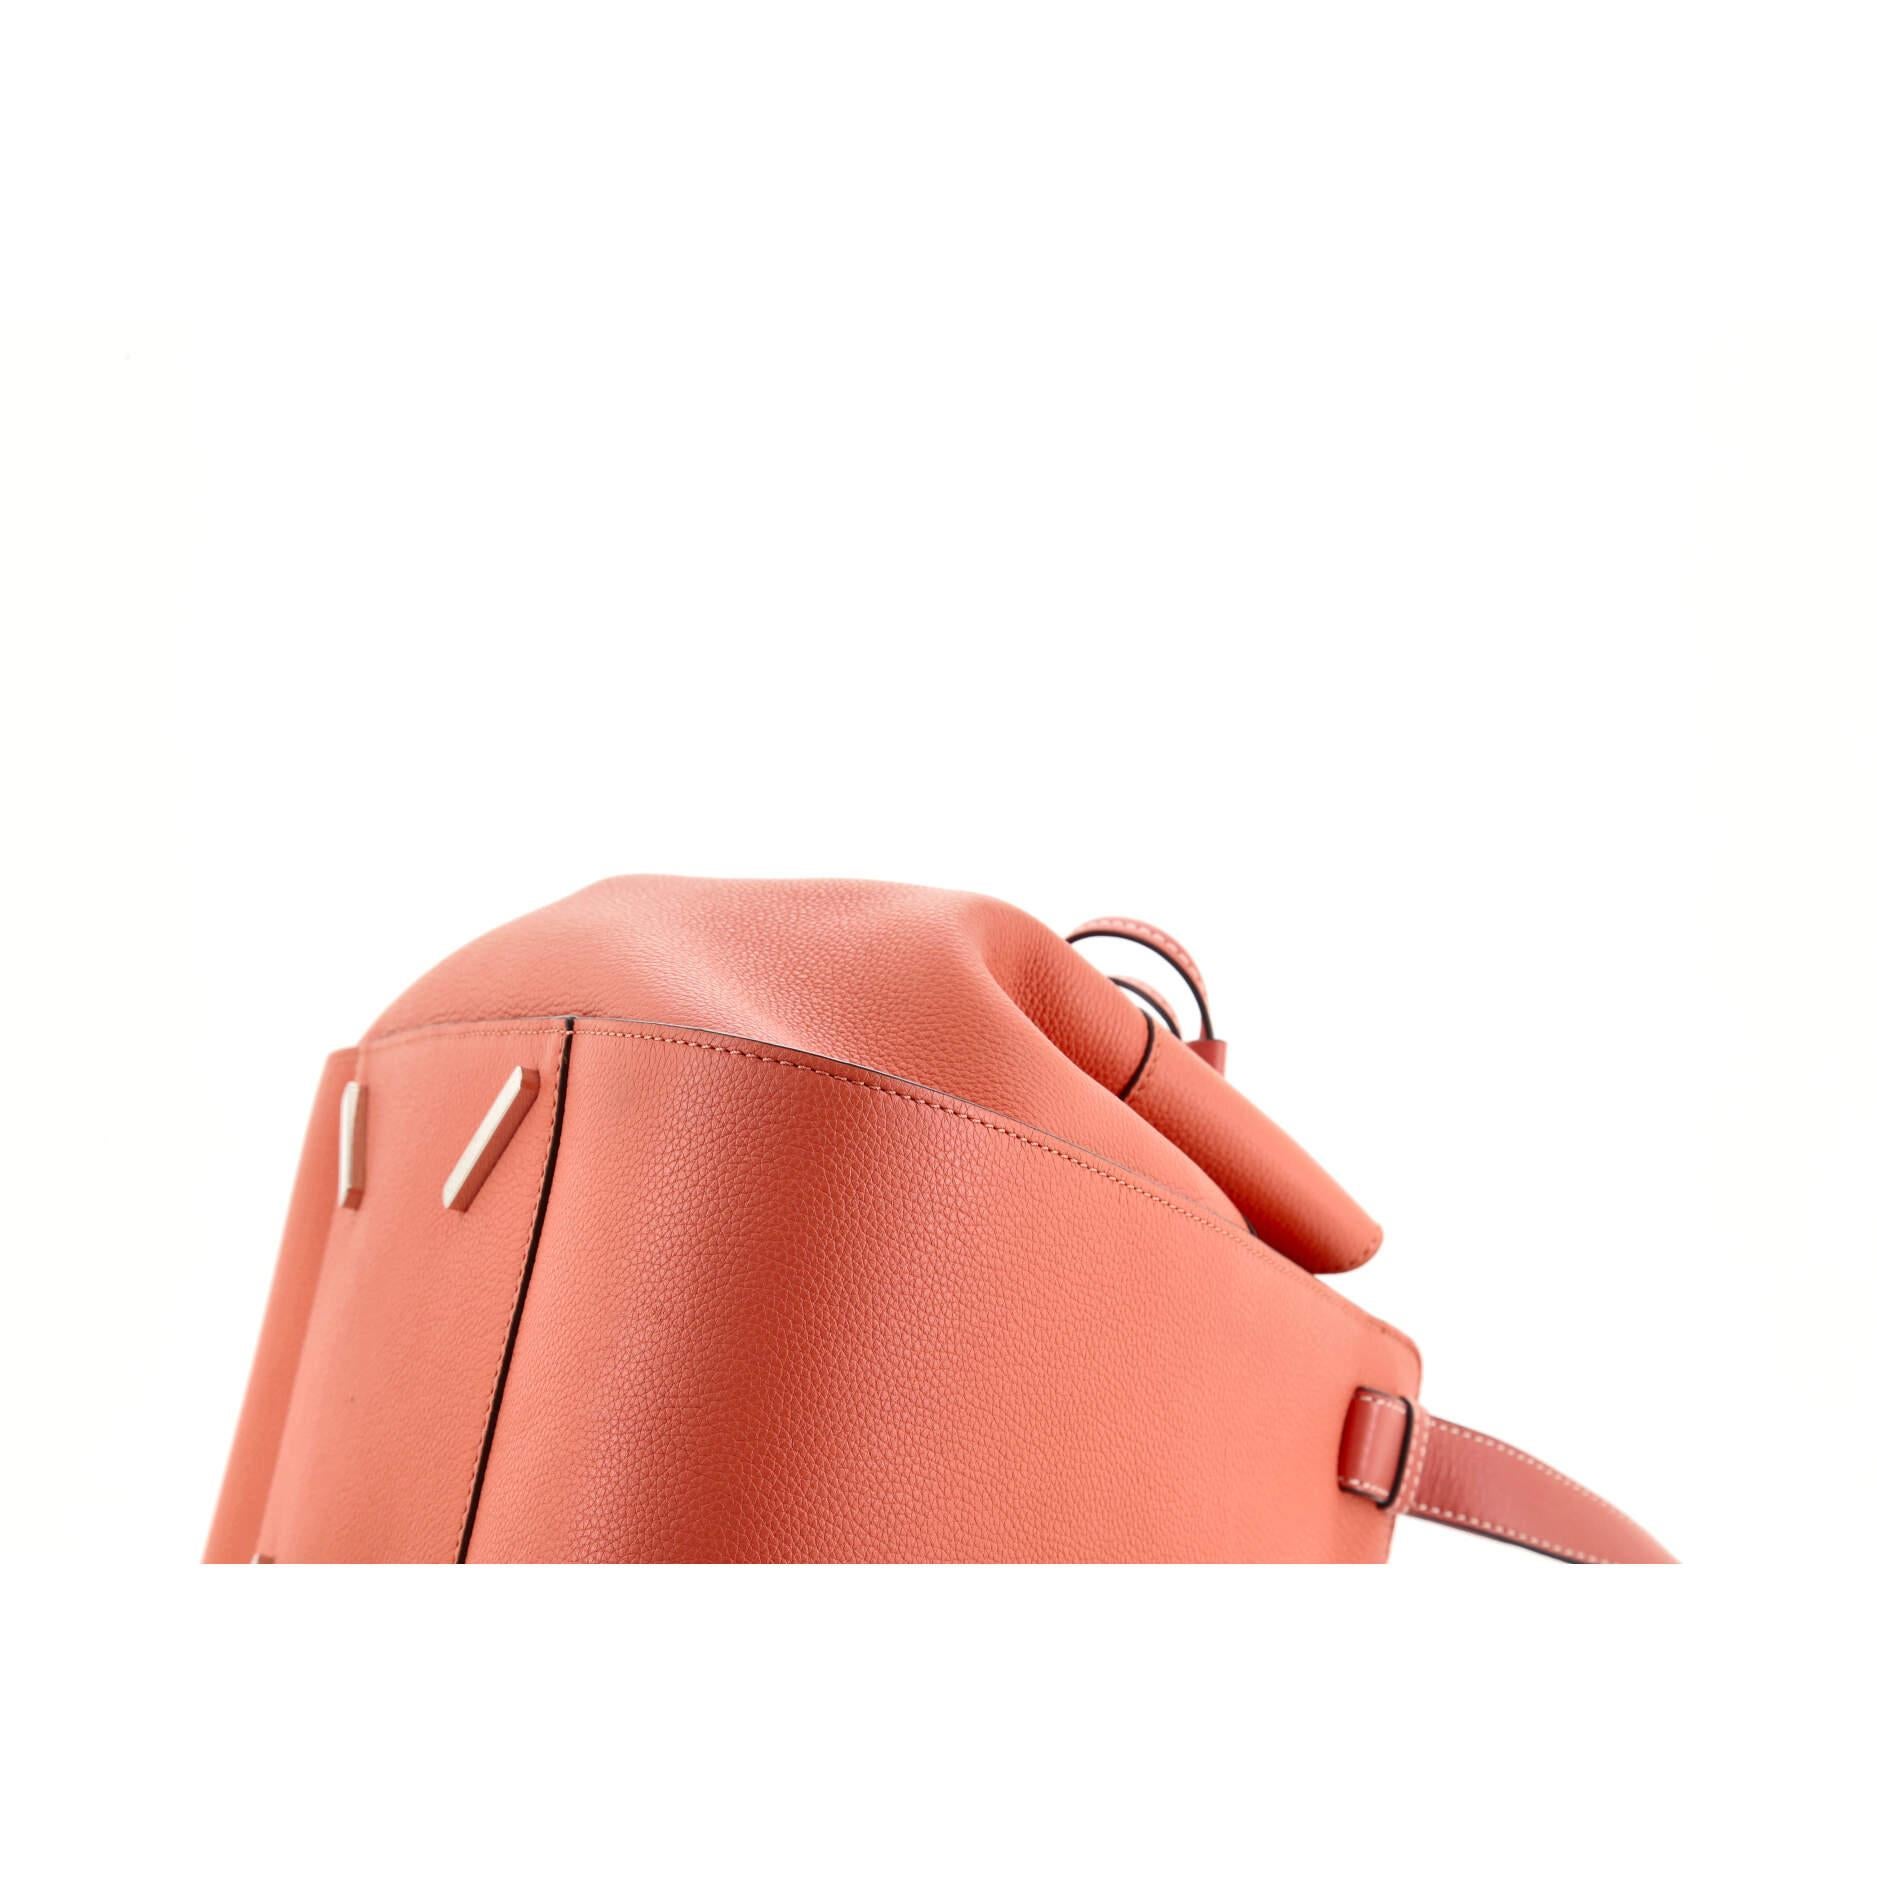 Orange Loewe Hammock Bag Leather Medium